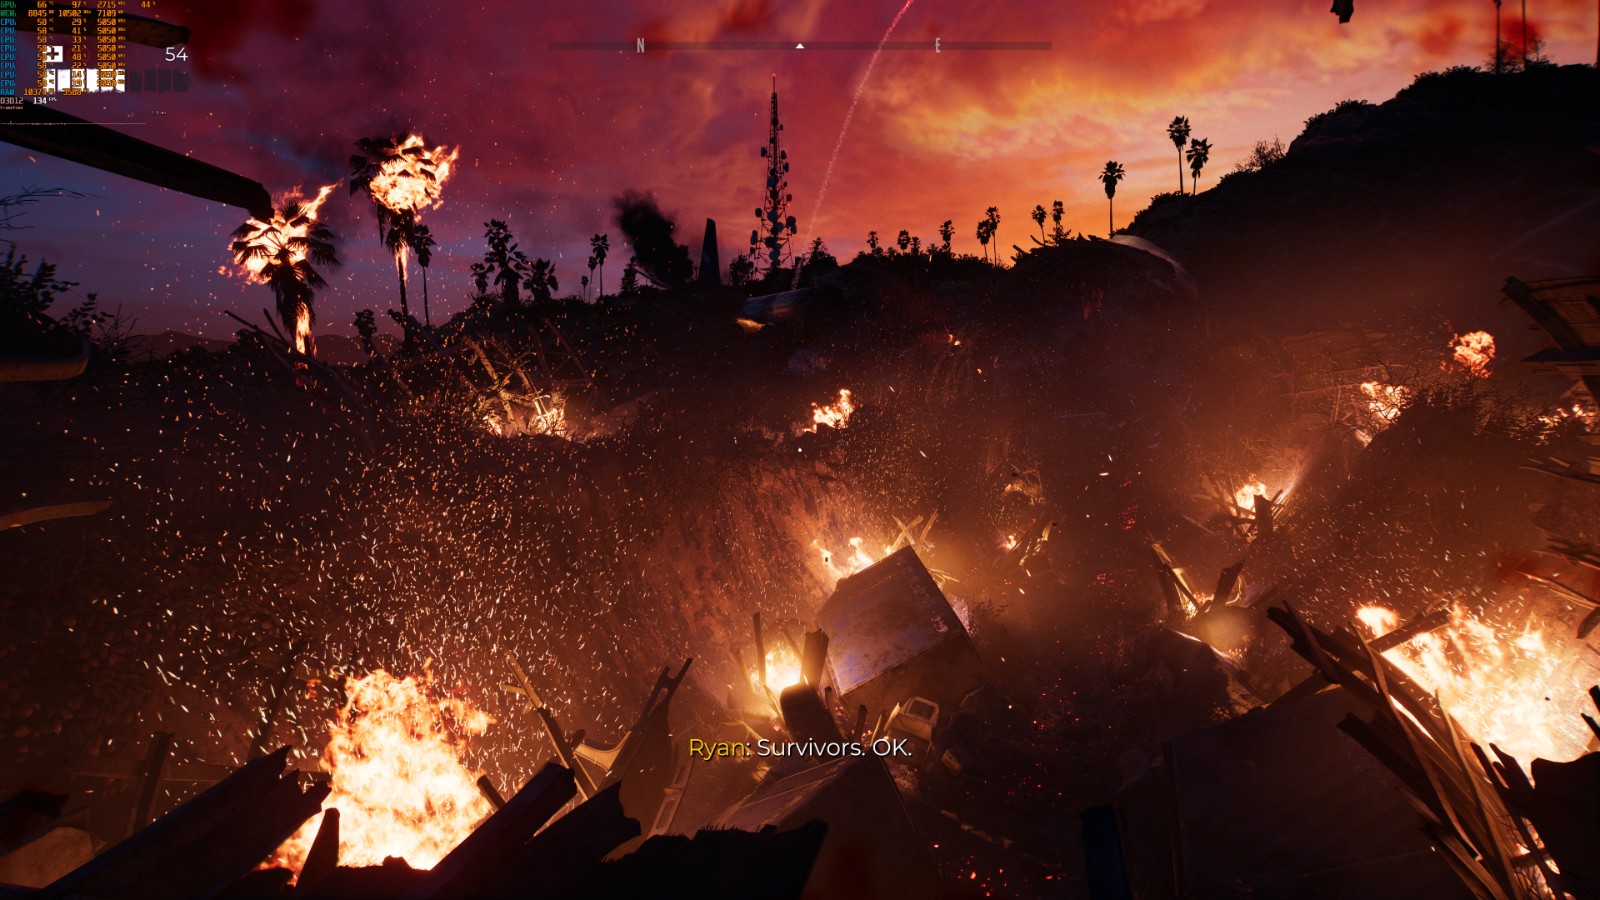 《死亡岛2》全新截图公布 外媒称最好看的PC游戏之一